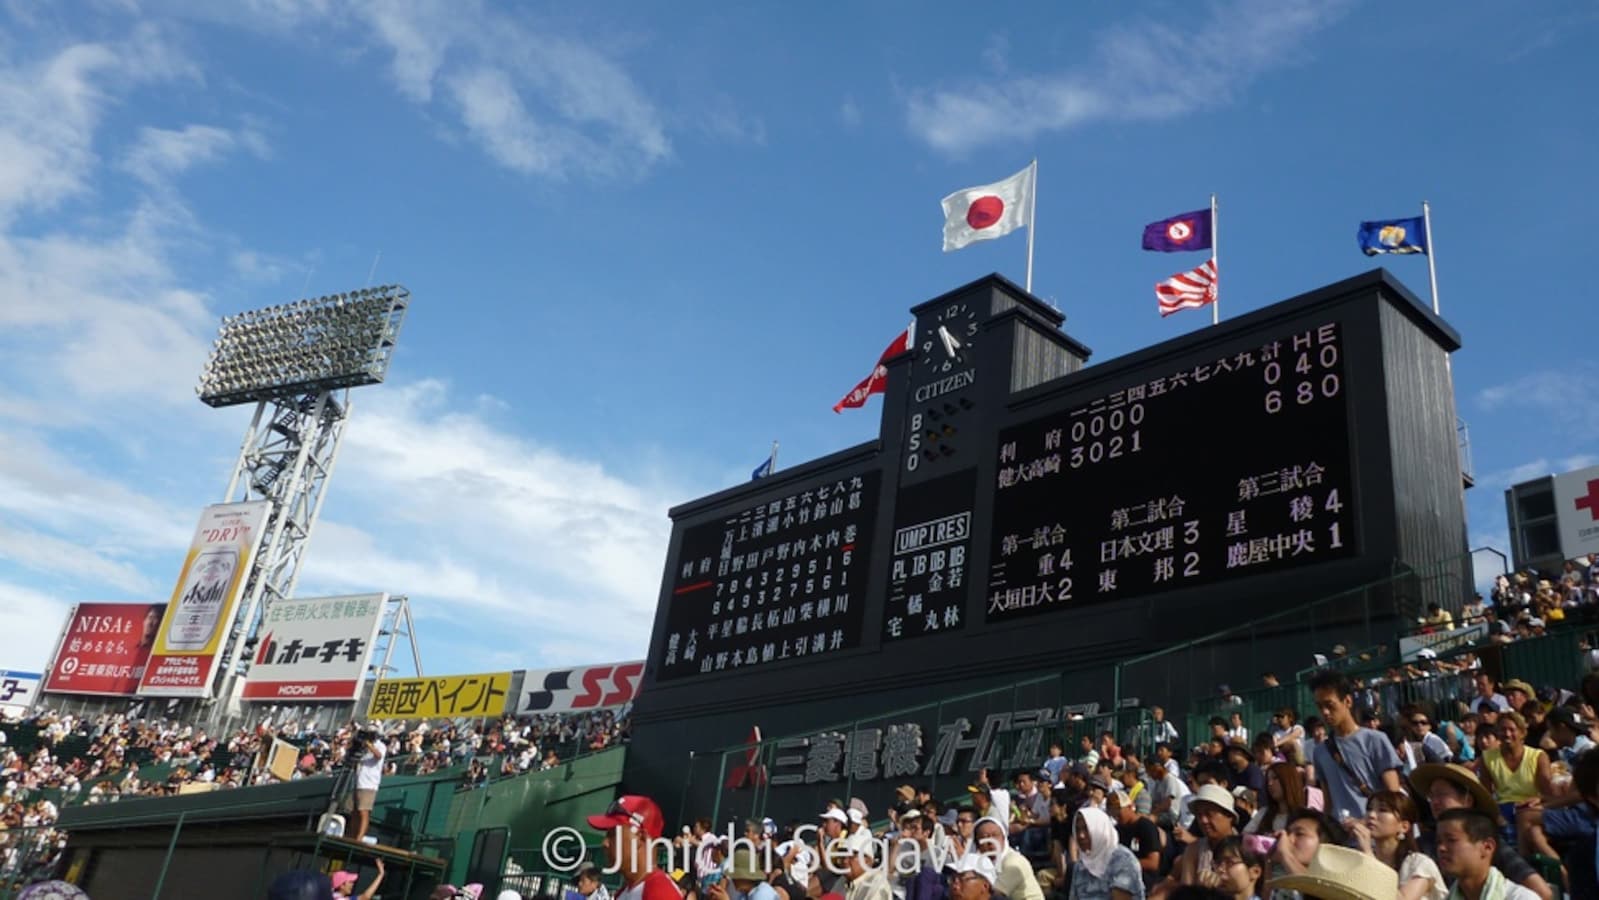 甲子園 一場全日本都為之瘋狂的野球大會 All About Japan